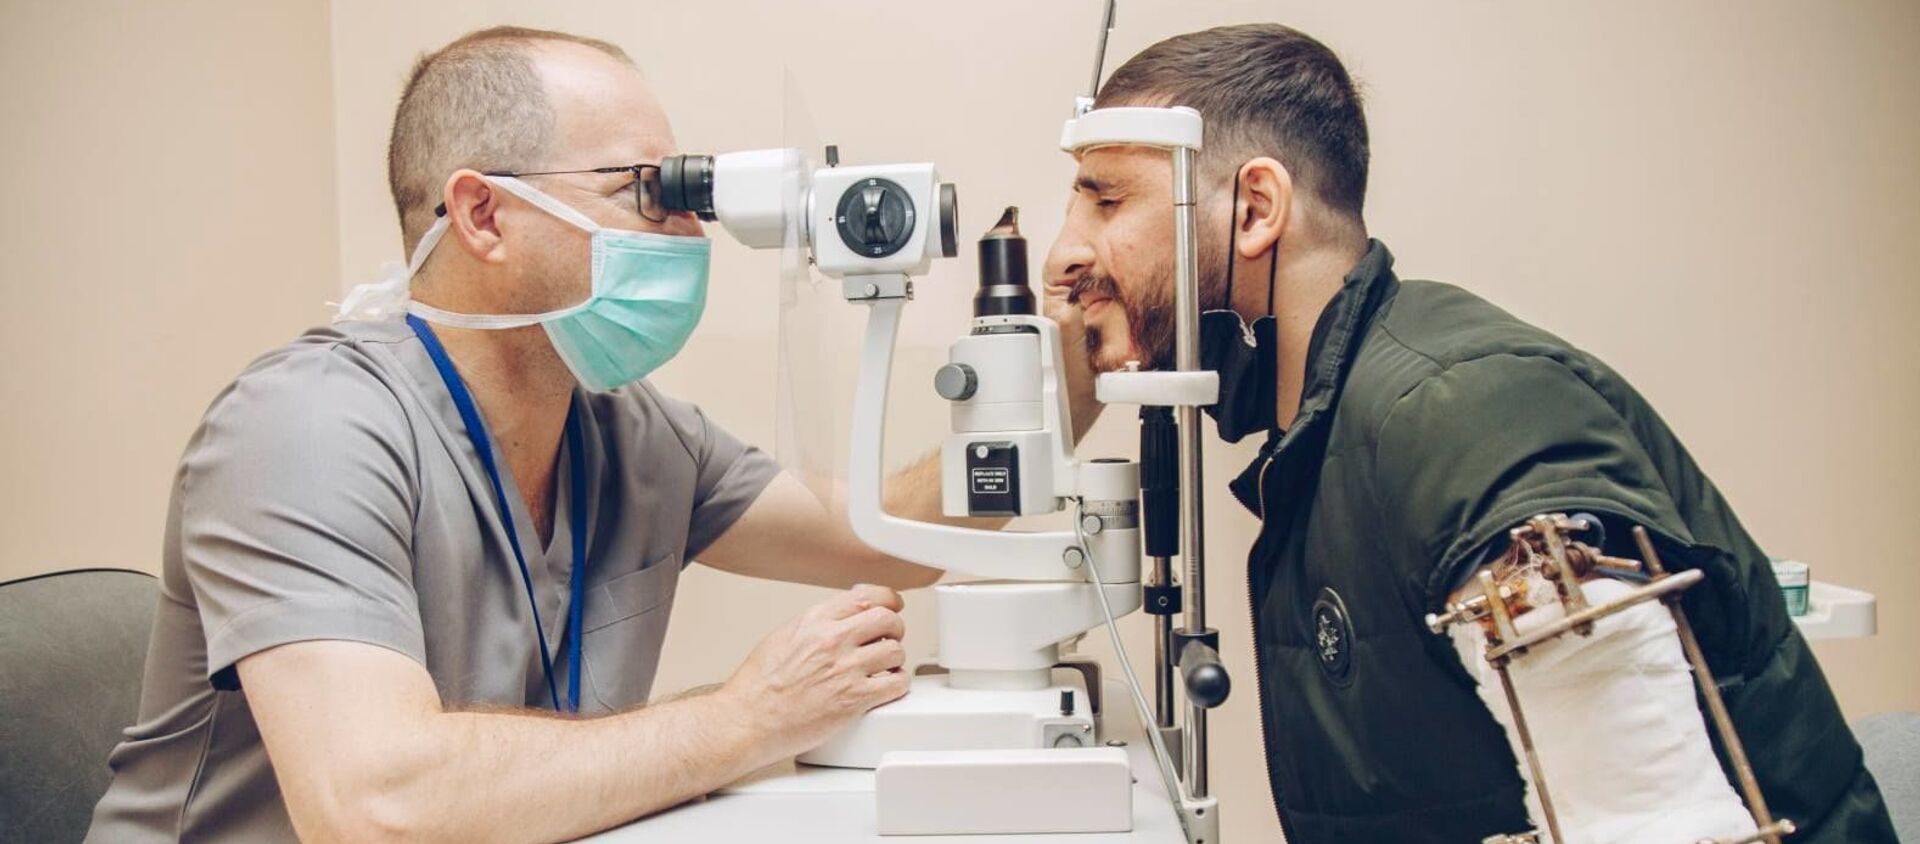 Команда израильских офтальмологов во время осмотра - Sputnik Азербайджан, 1920, 01.03.2021